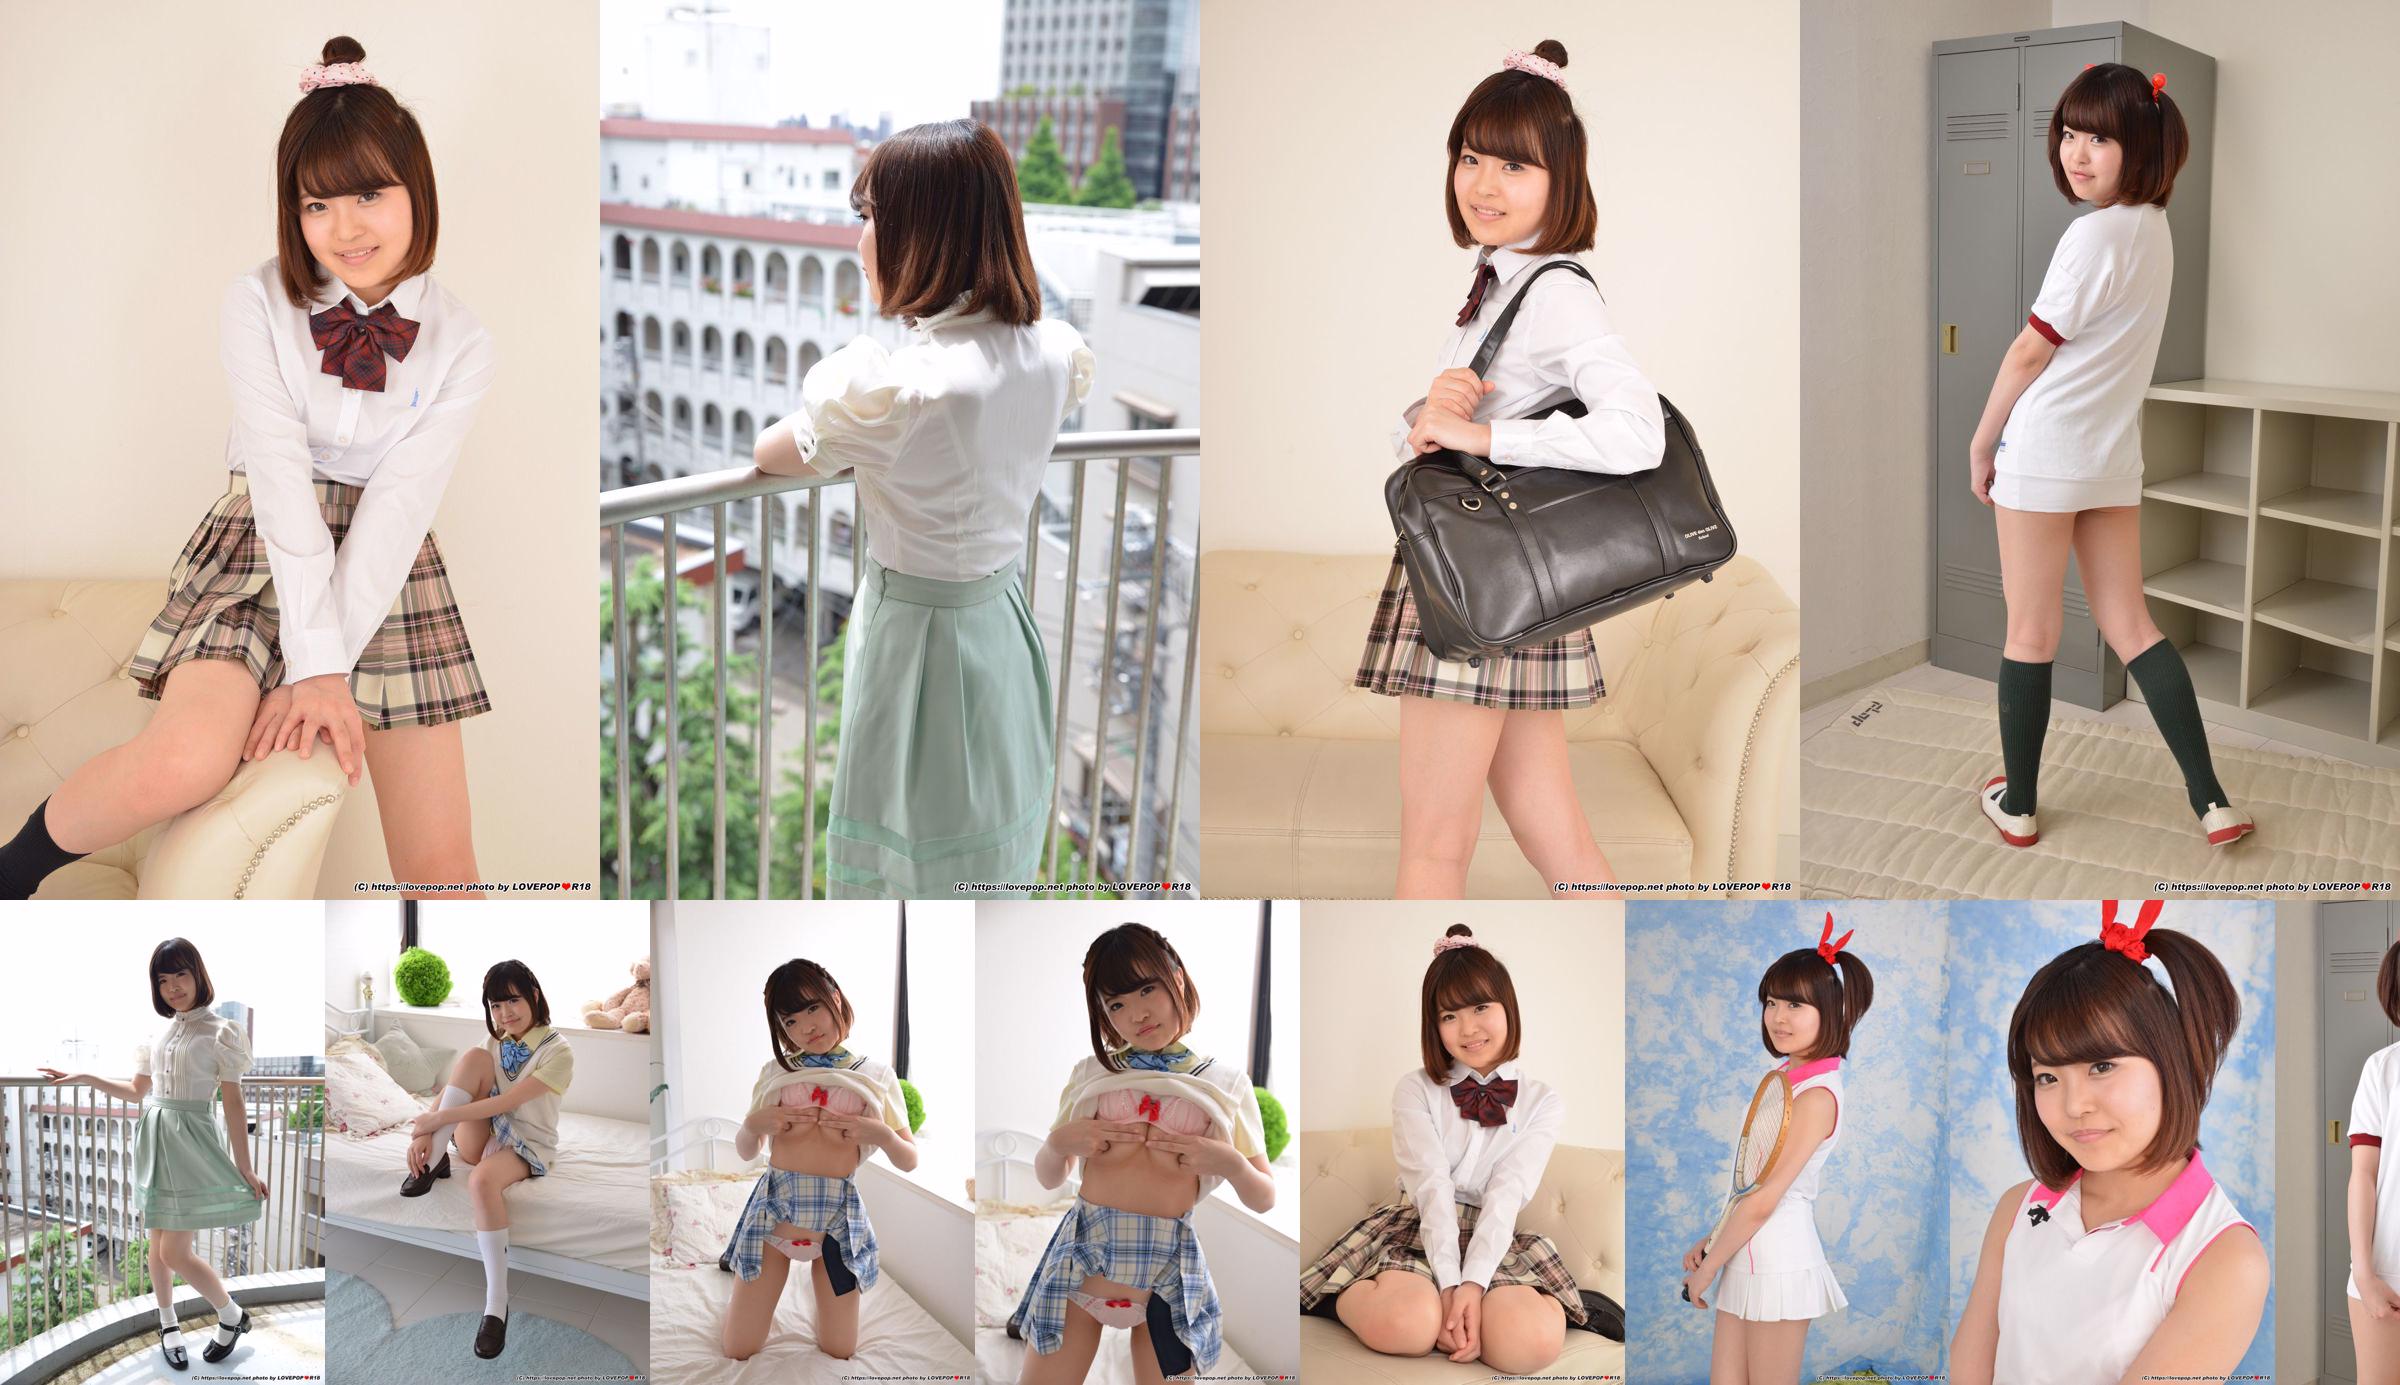 [LOVEPOP] Natsuki Minami Natsuki Minami / Natsuki Minami Photoset 03 No.da8a22 Strona 1